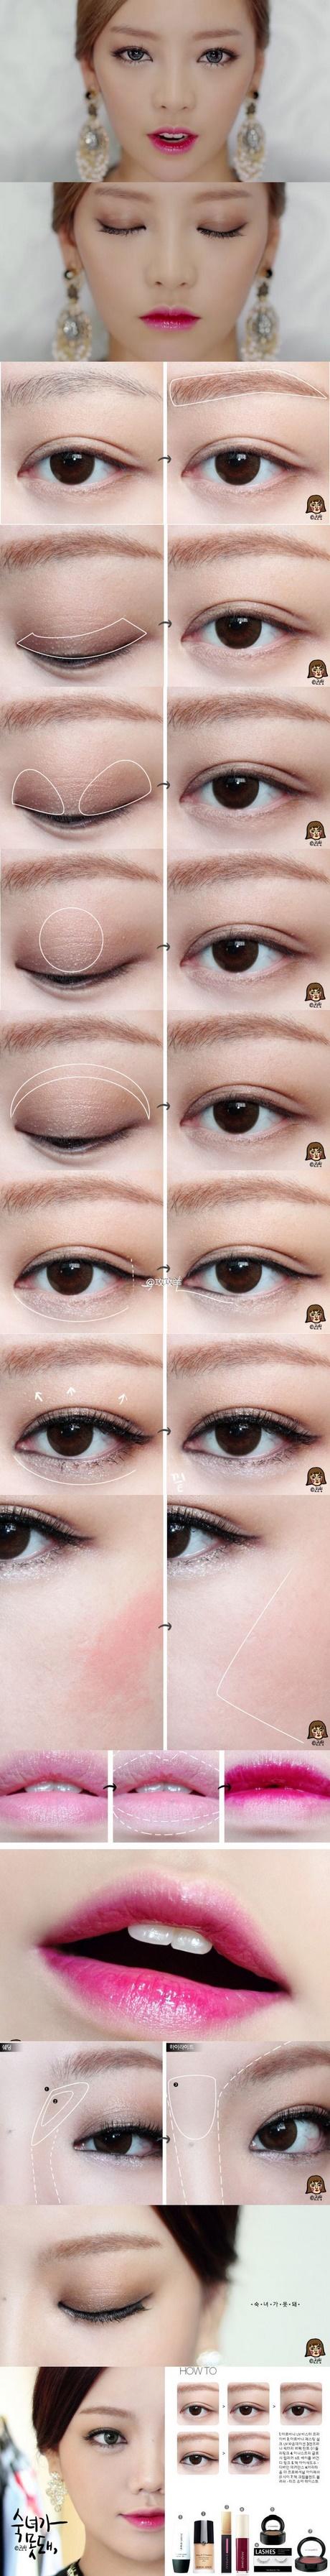 cha-eun-sang-makeup-tutorial-08 Cha eun sang make-up tutorial